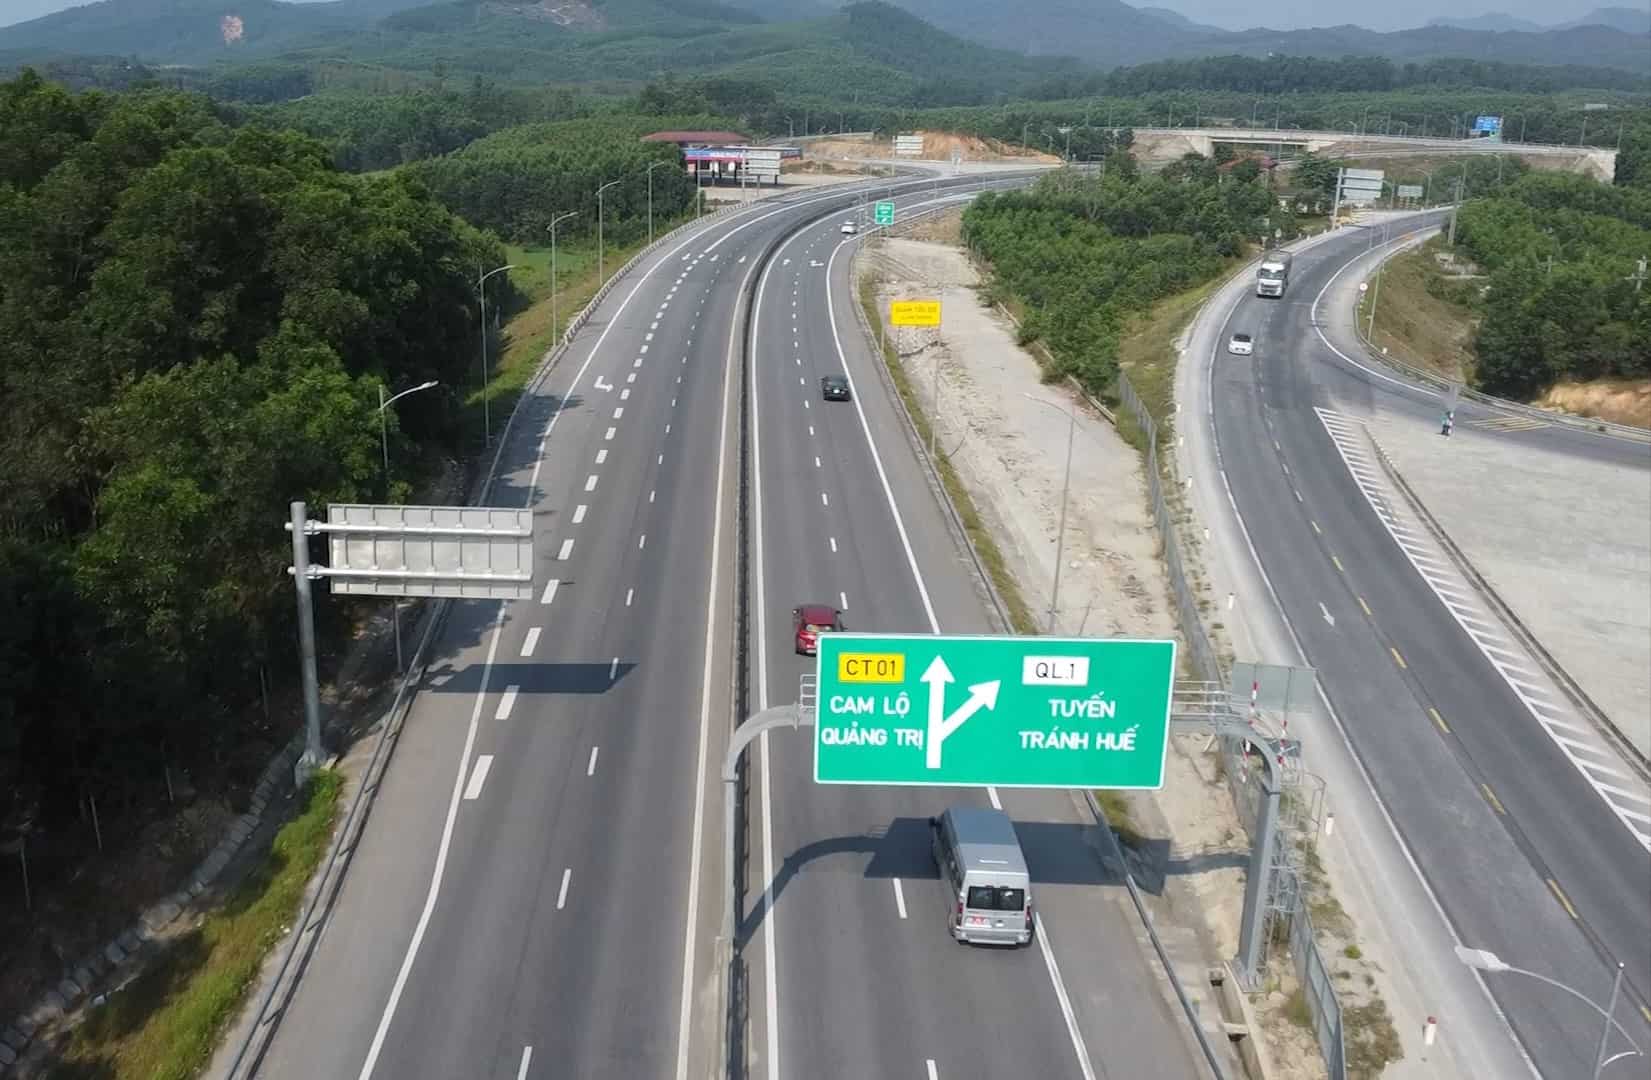 Được biết, cao tốc Cam Lộ - La Sơn dài hơn 98km đi qua 2 tỉnh Quảng Trị và Thừa Thiên Huế, hiện chỉ có 2 làn xe. Đưa vào sử dụng năm 2023, cao tốc này bộc lộ bất cập, xảy ra nhiều vụ tai nạn giao thông nghiêm trọng.